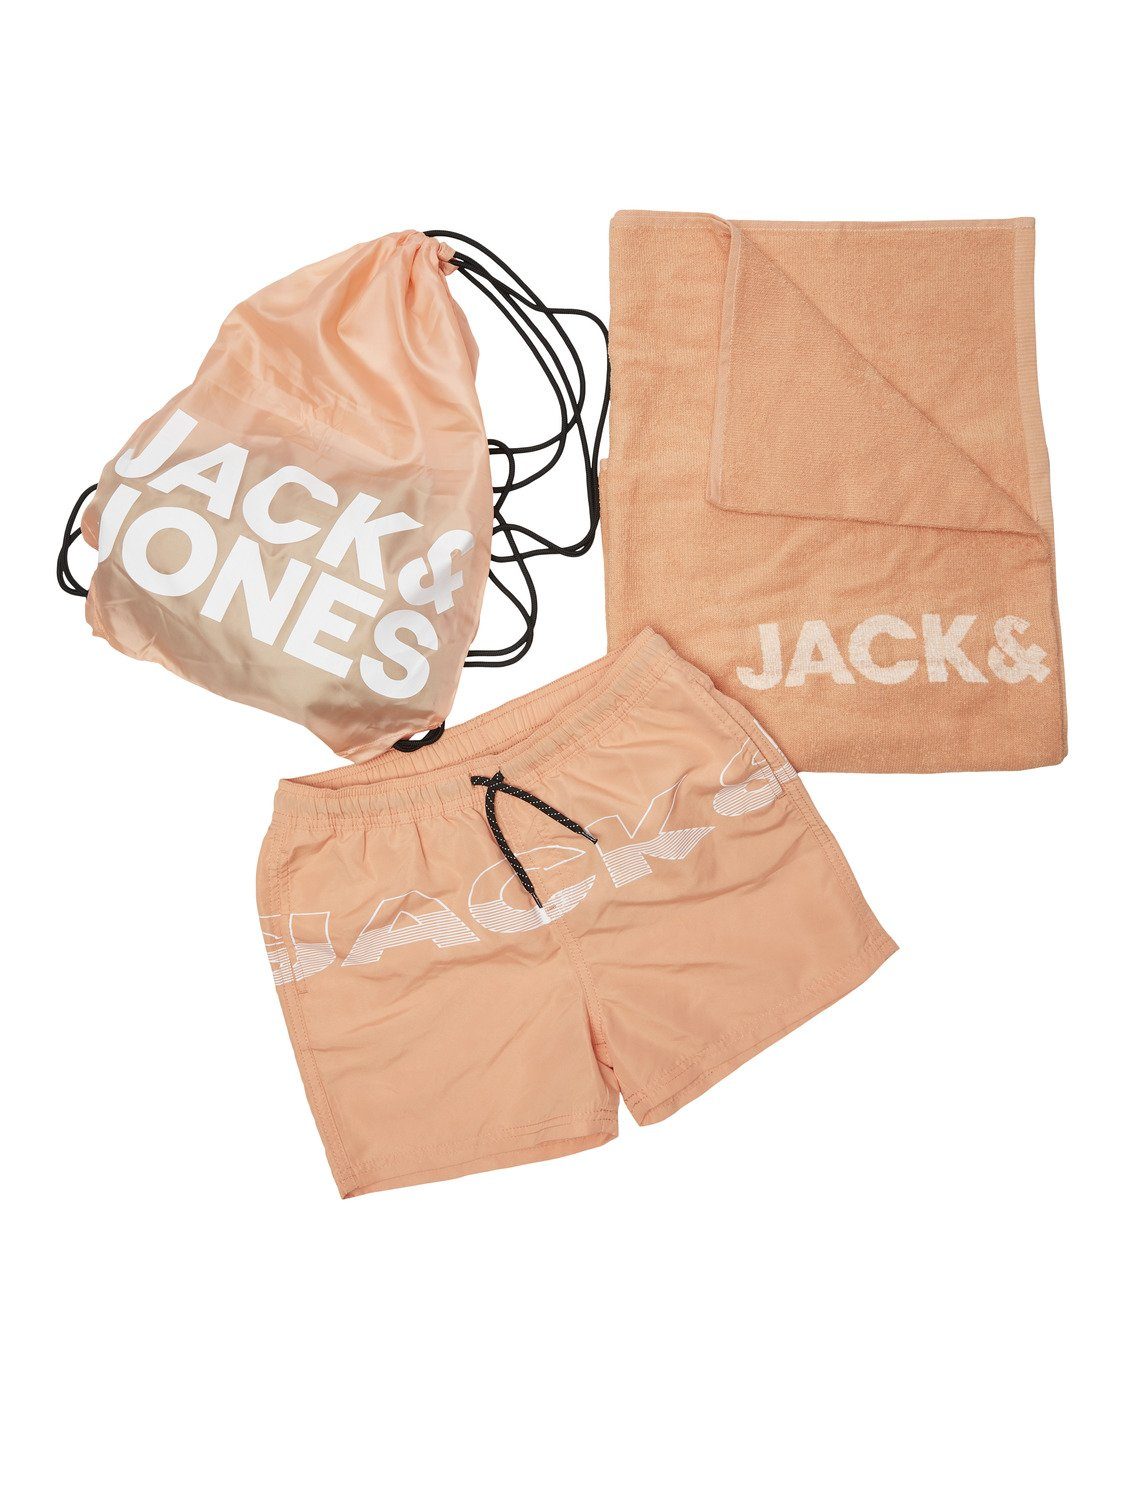 Jack & Jones Badehosen & Schwimmhosen online kaufen | OTTO